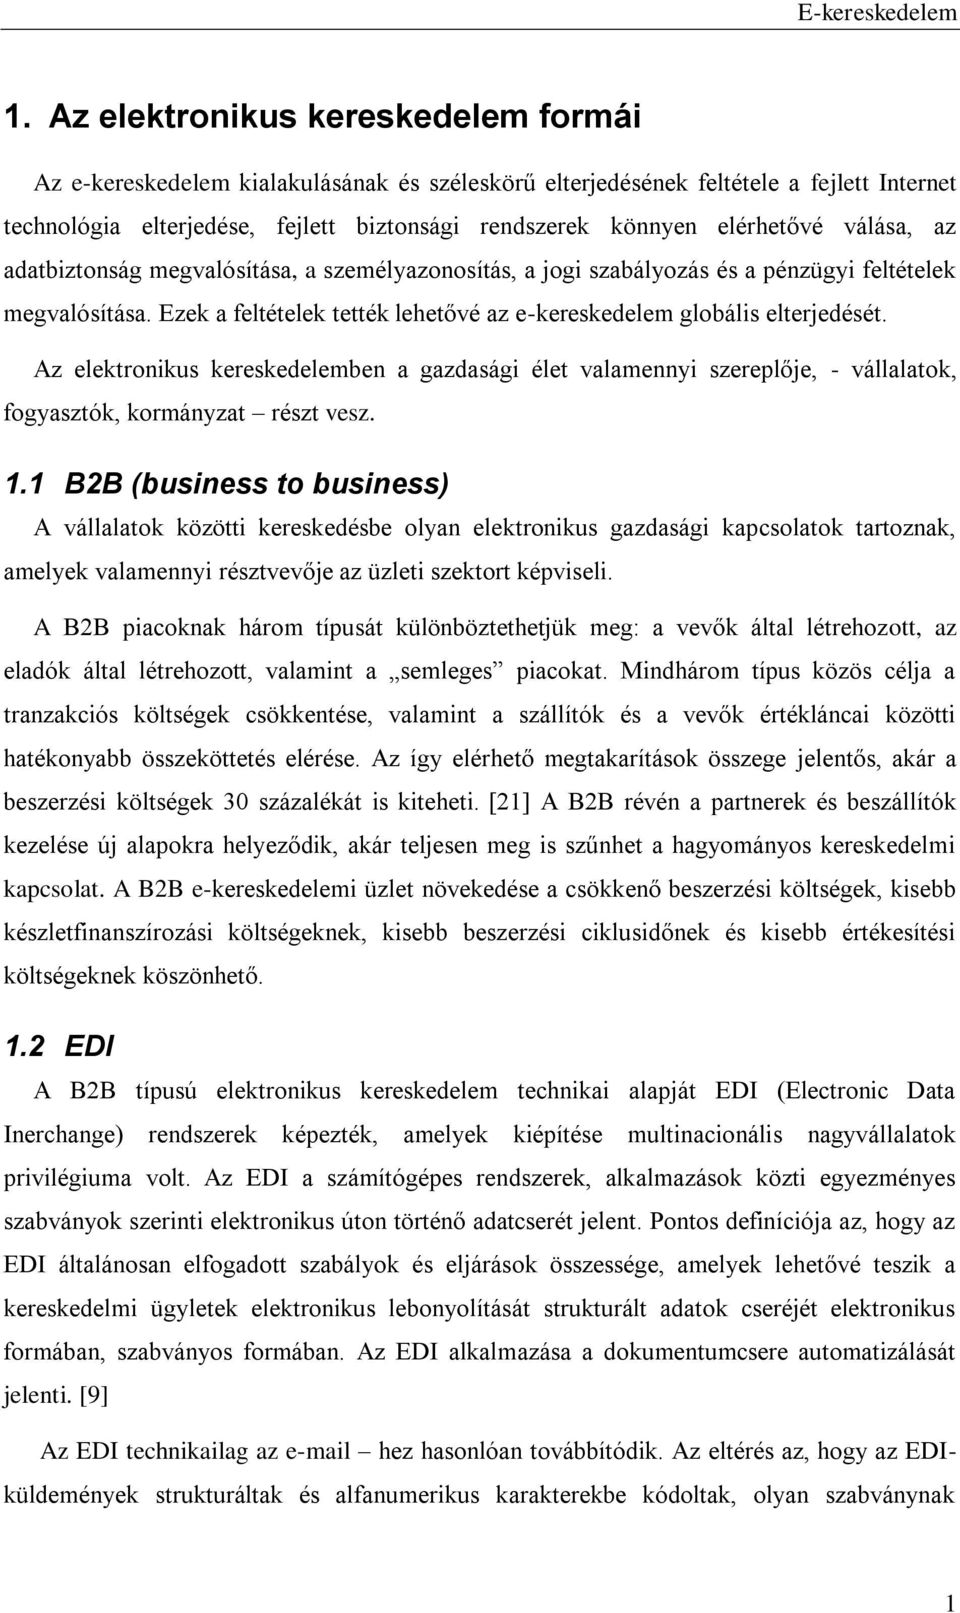 1. Az elektronikus kereskedelem formái - PDF Ingyenes letöltés